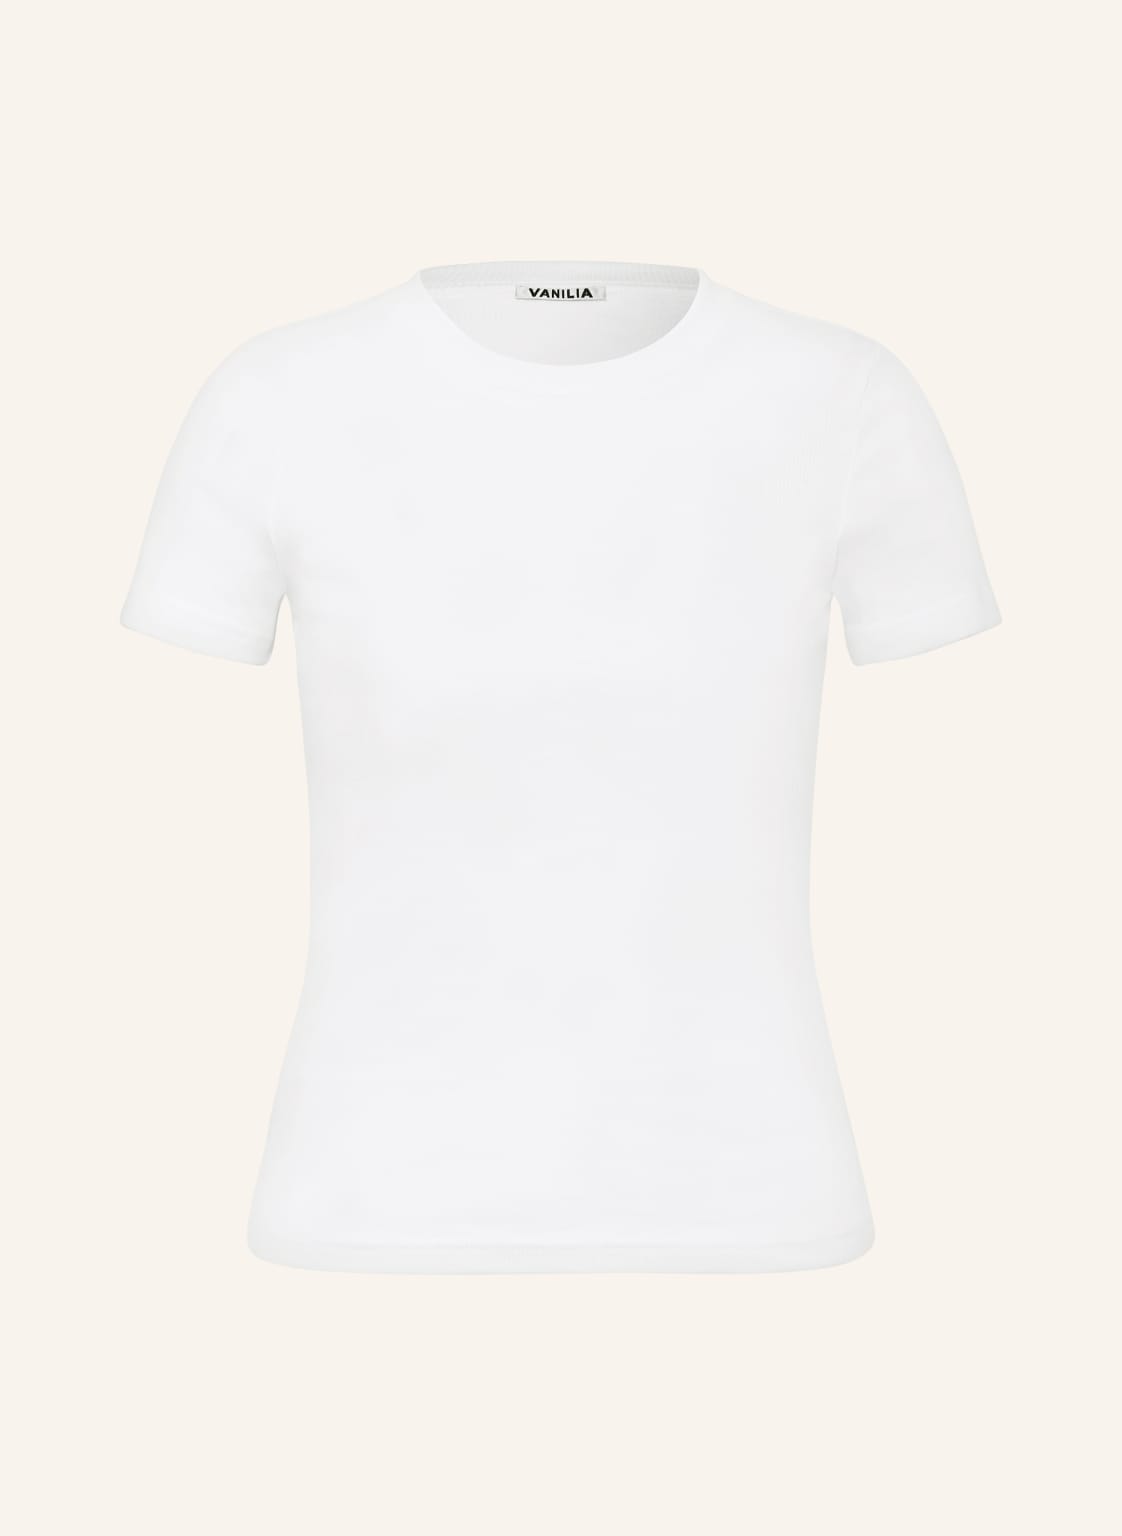 Vanilia T-Shirt weiss von VANILIA